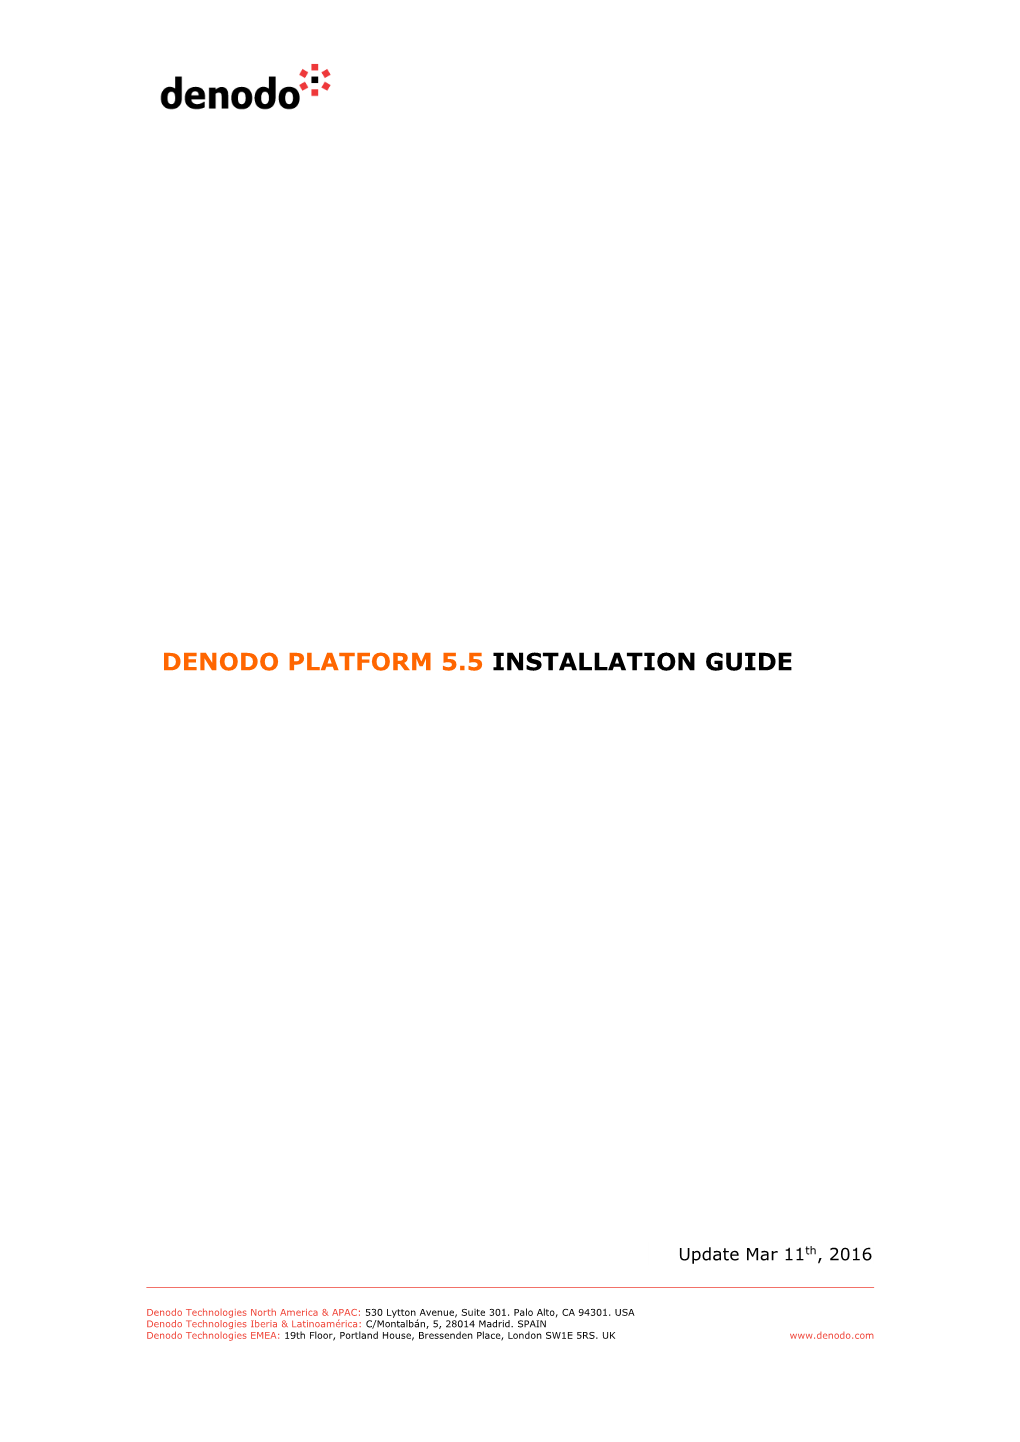 Denodo Platform 5.5 Installation Guide